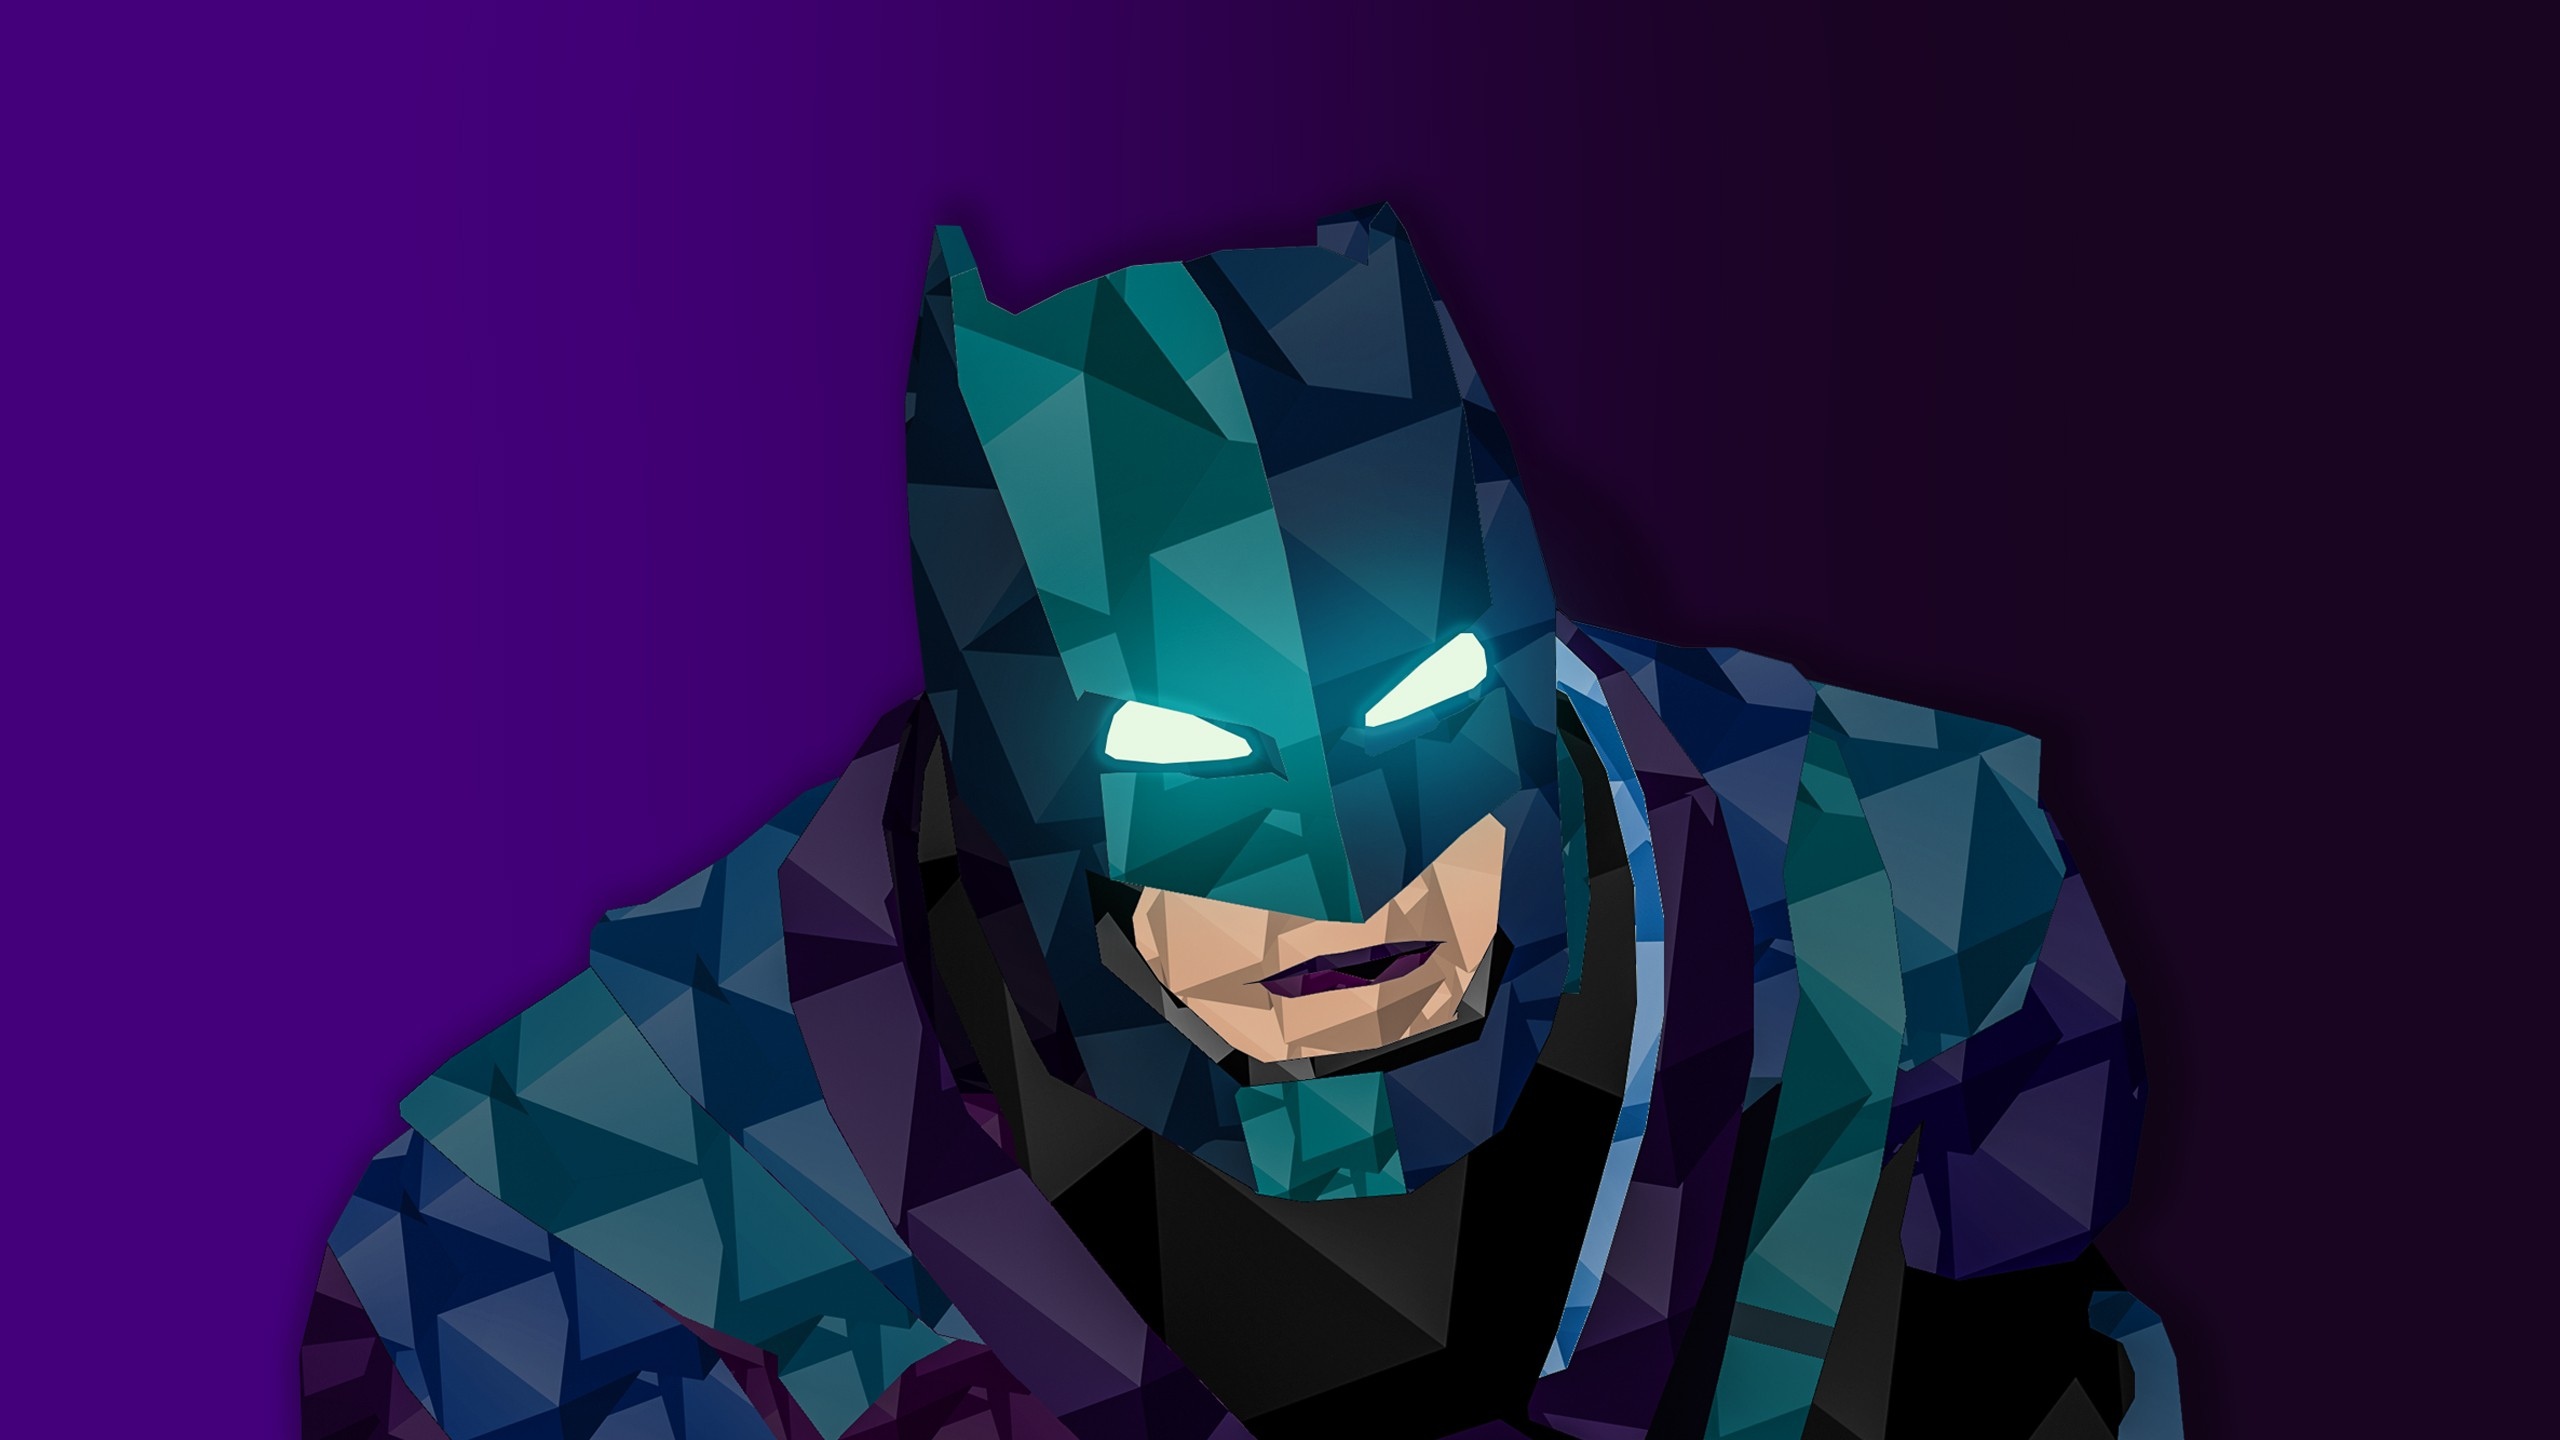 蝙蝠侠,dc漫画,蝙蝠侠v超人:正义黎明,数字艺术壁纸